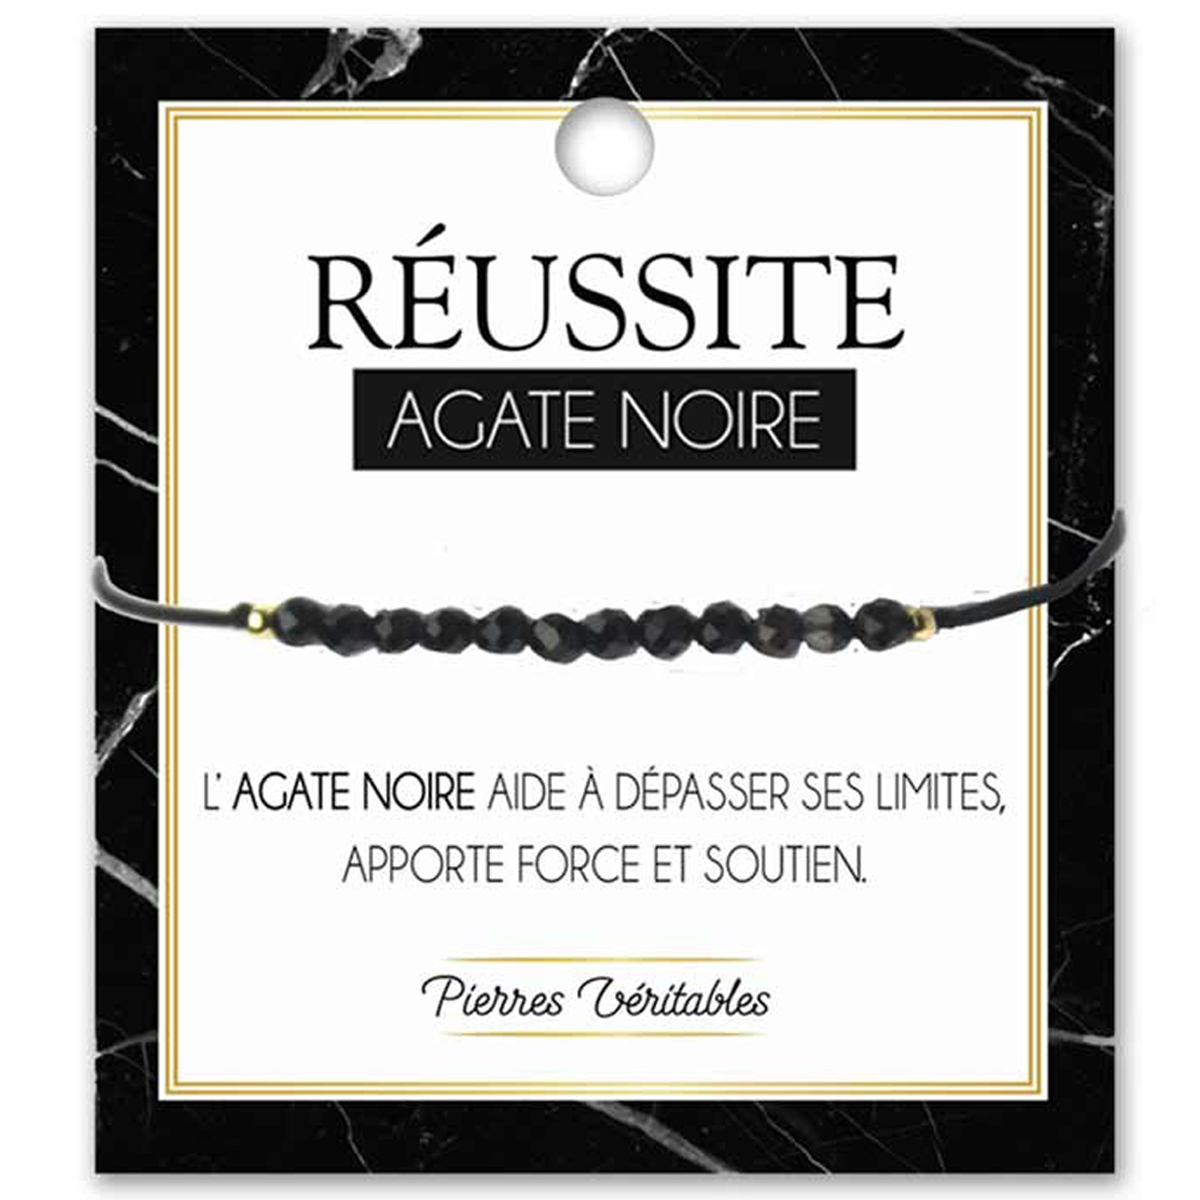 Bracelet créateur \'Minéralia\' agate noire (réussite) - 3 mm - [R3076]